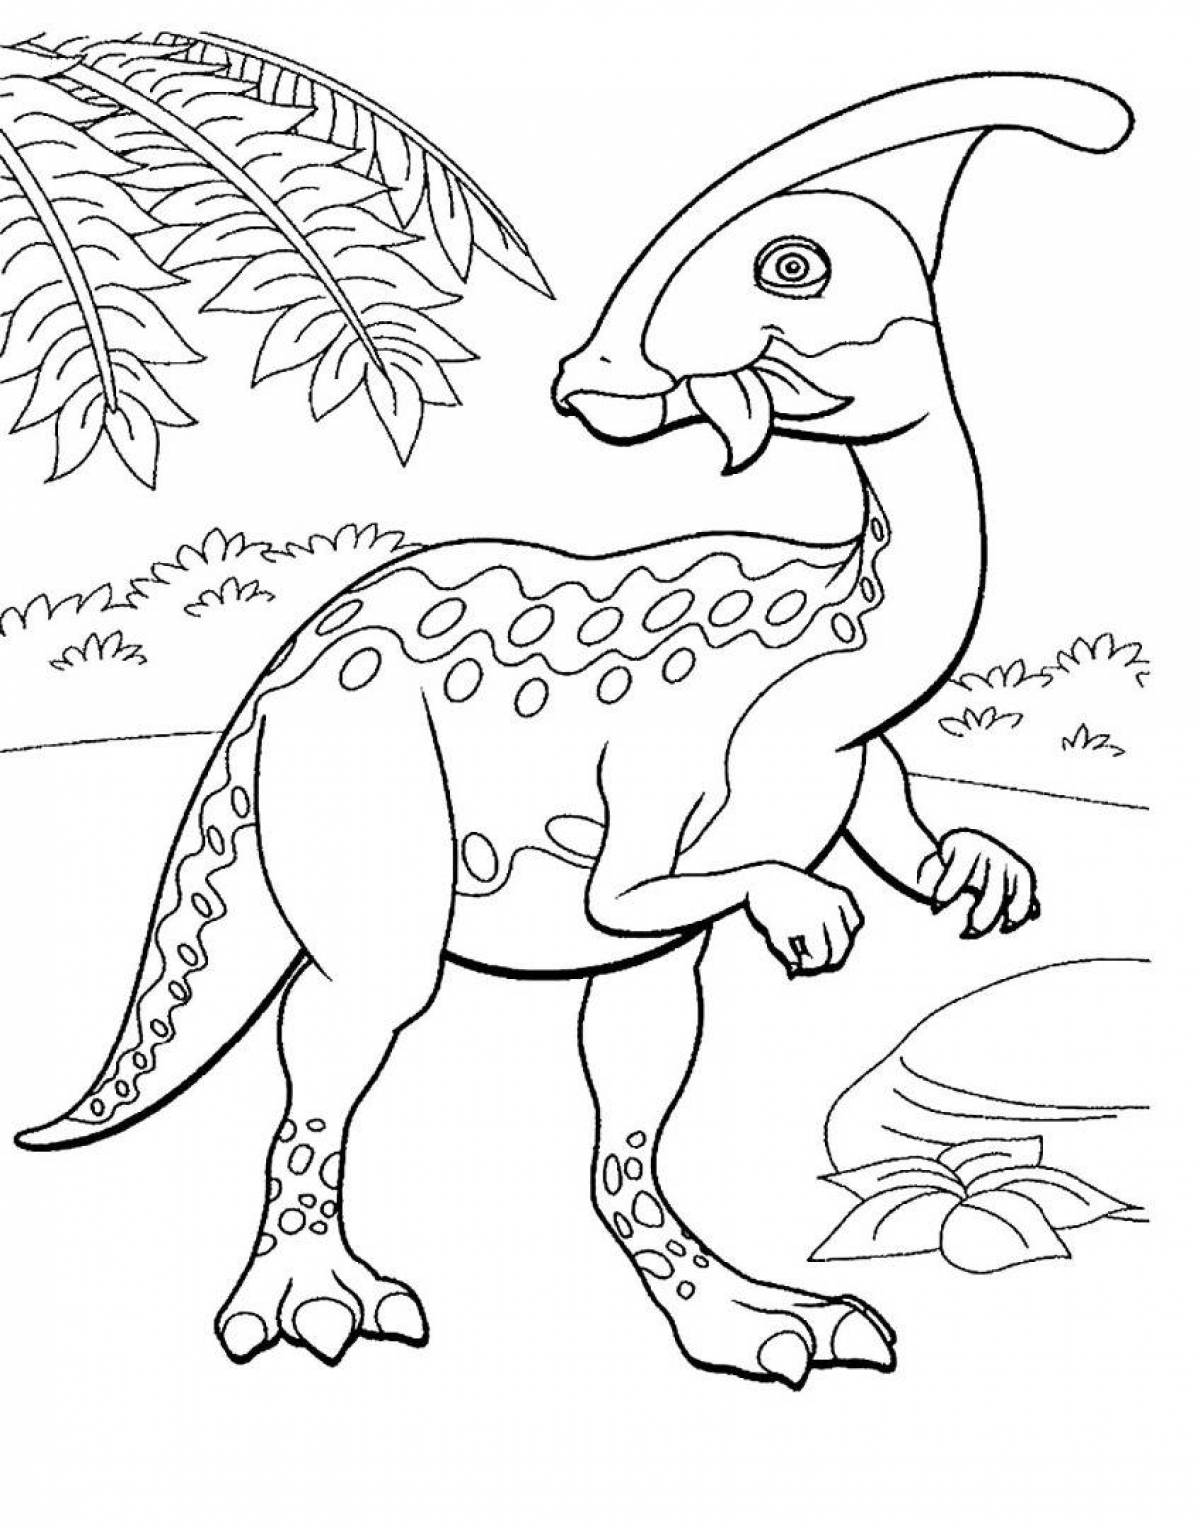 Раскраска динозавр формат а4. Дино раскраска динозавры. Перри Паразауролоф. Динозавр раскраска для детей. Динозаврики раскраска для детей.